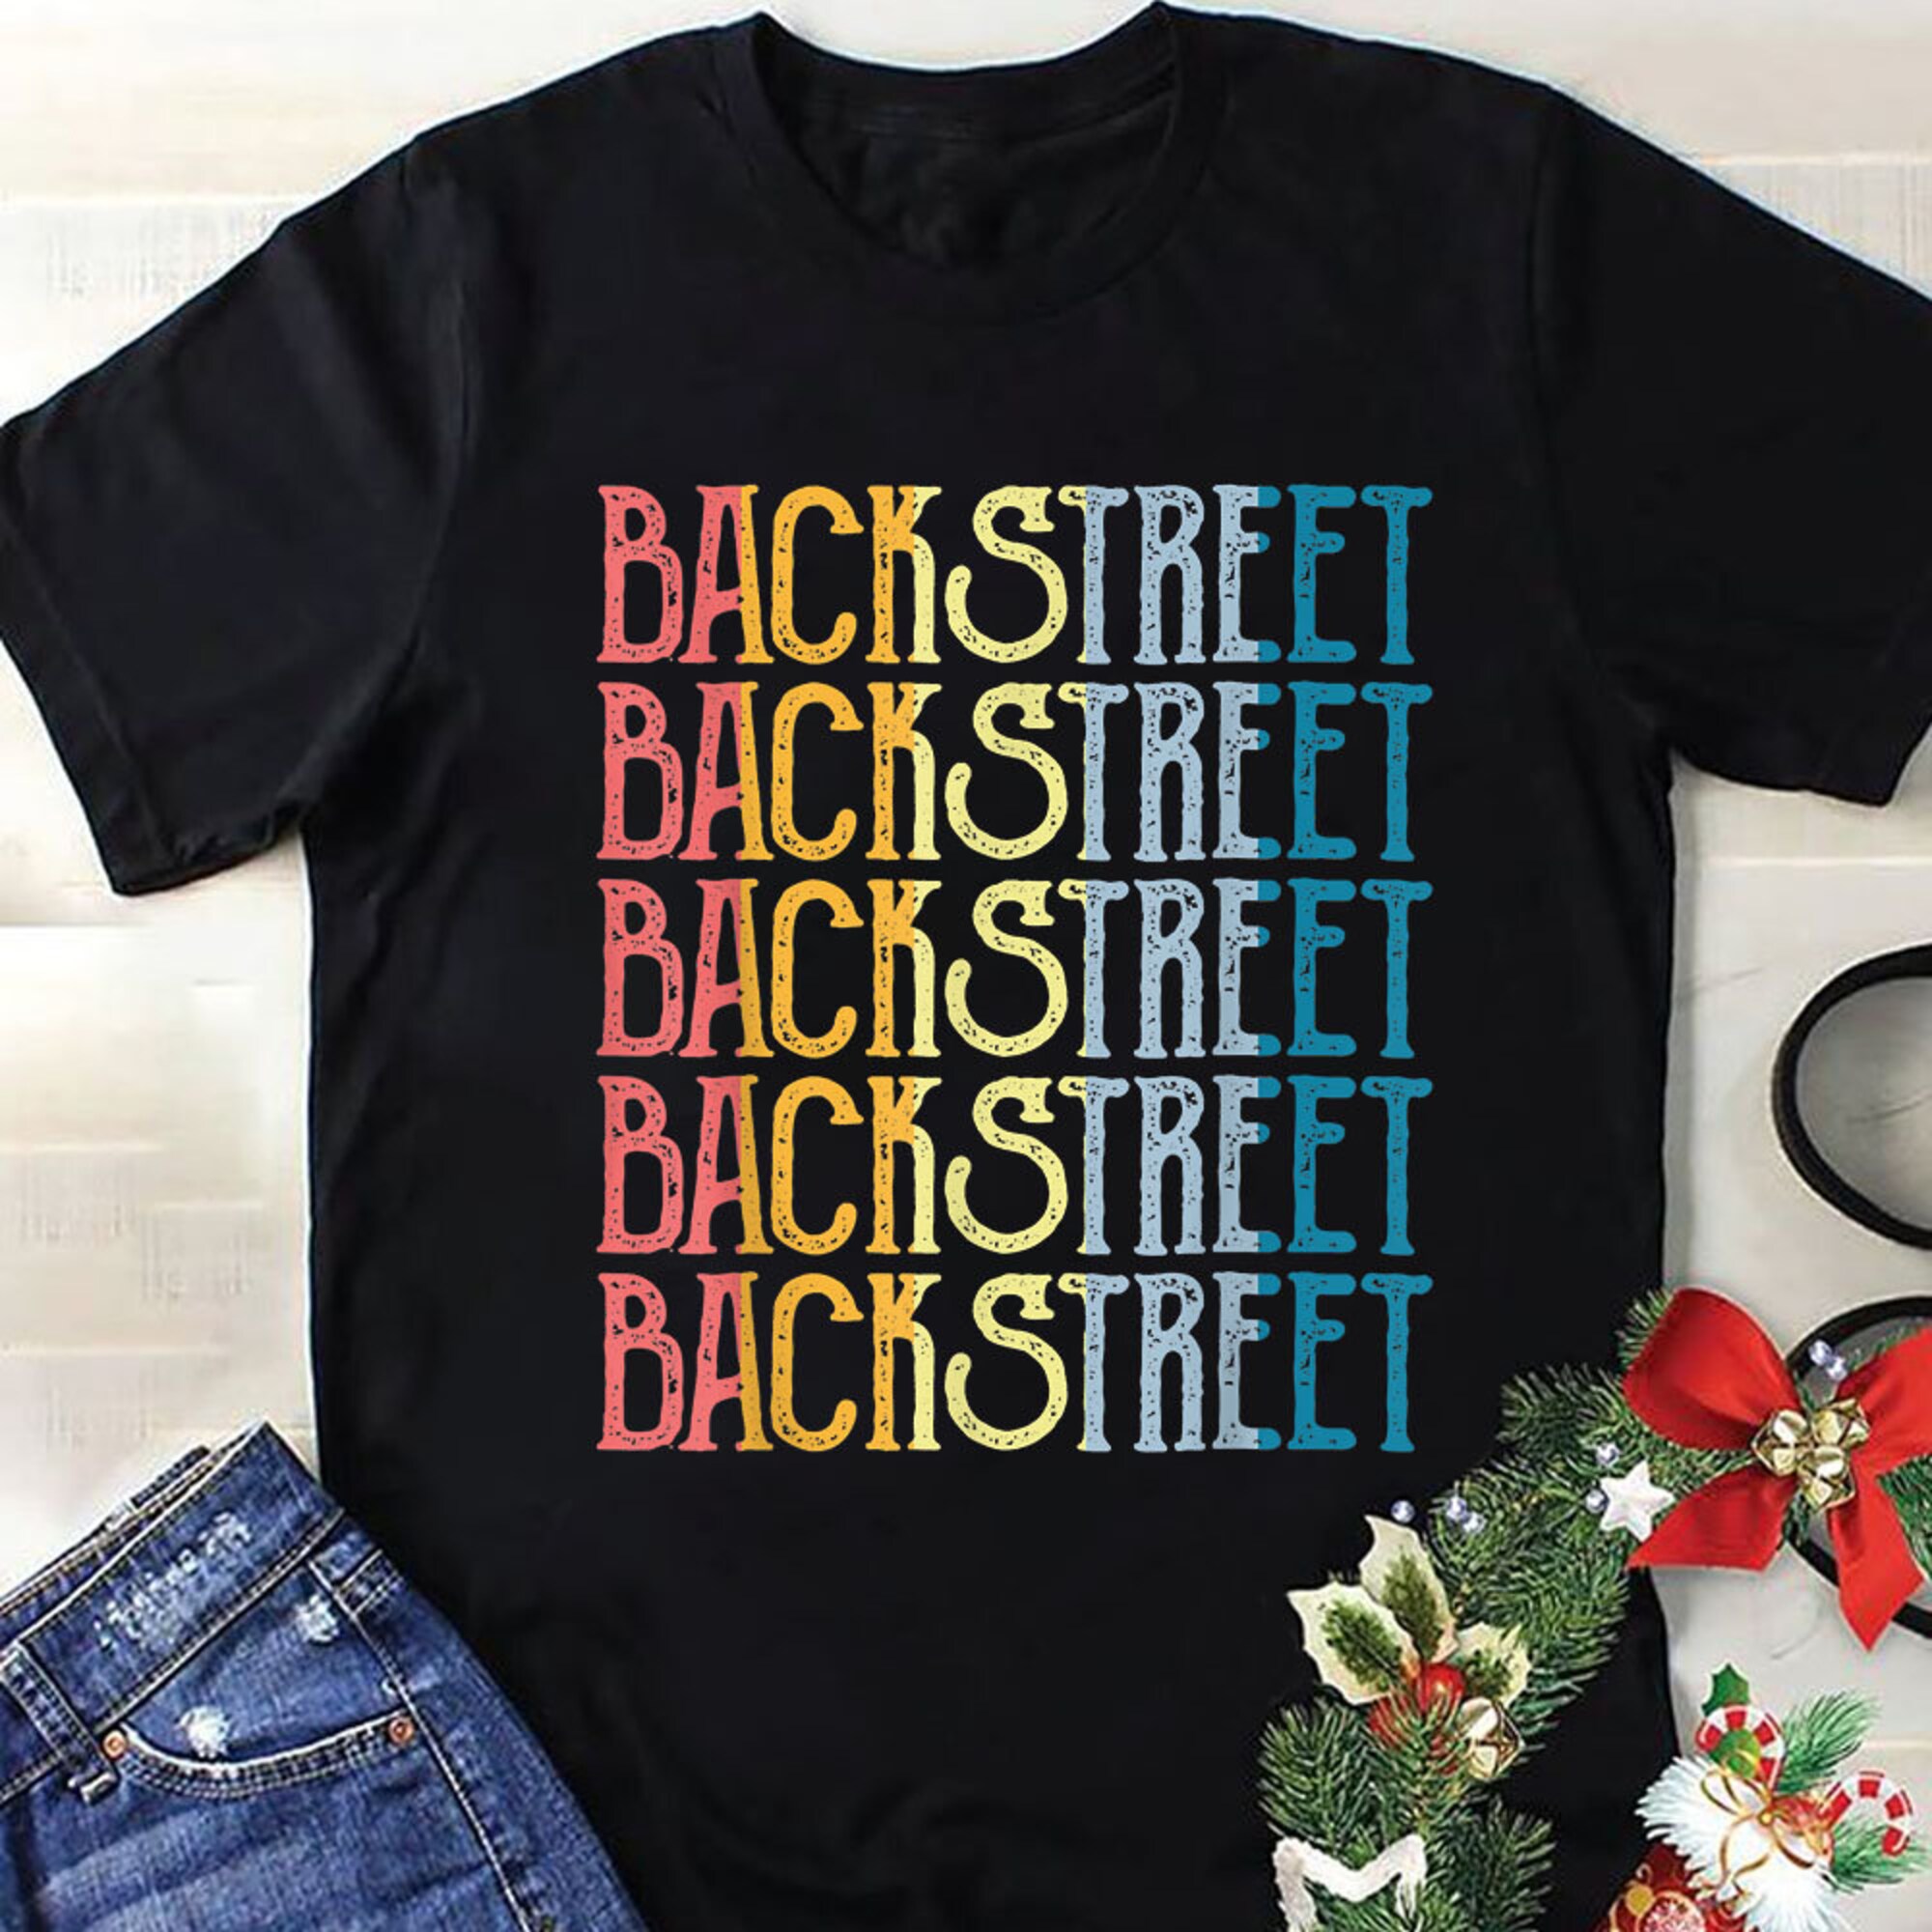 Discover Maglietta T-Shirt Backstreet Boys DNA World Tour BSB Legends 90s Music